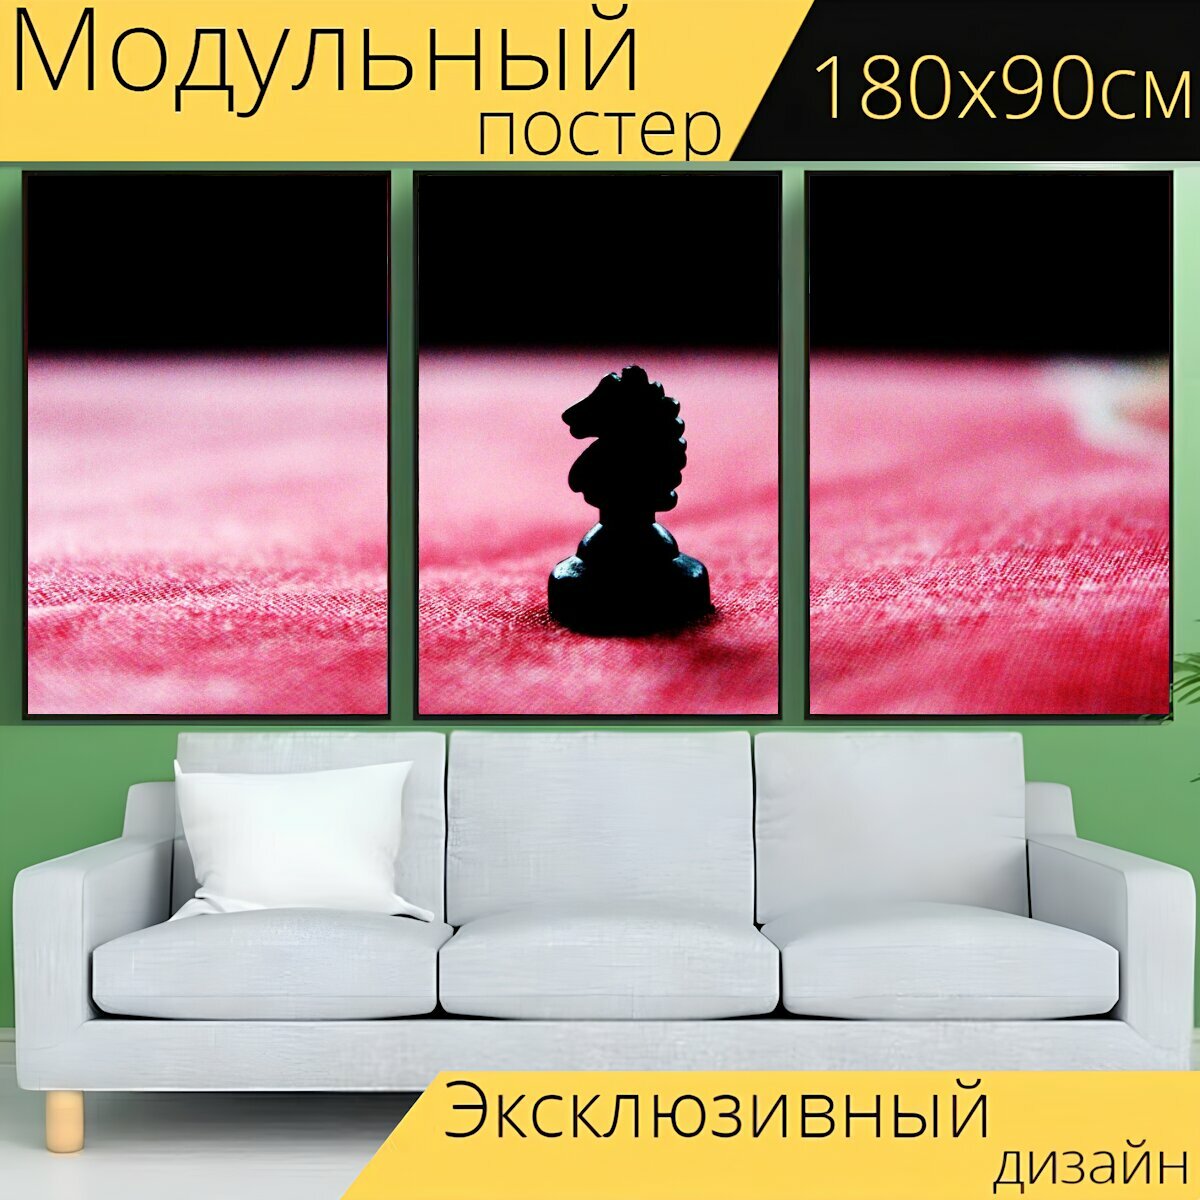 Модульный постер "Шахматы, рыцарь, игра" 180 x 90 см. для интерьера